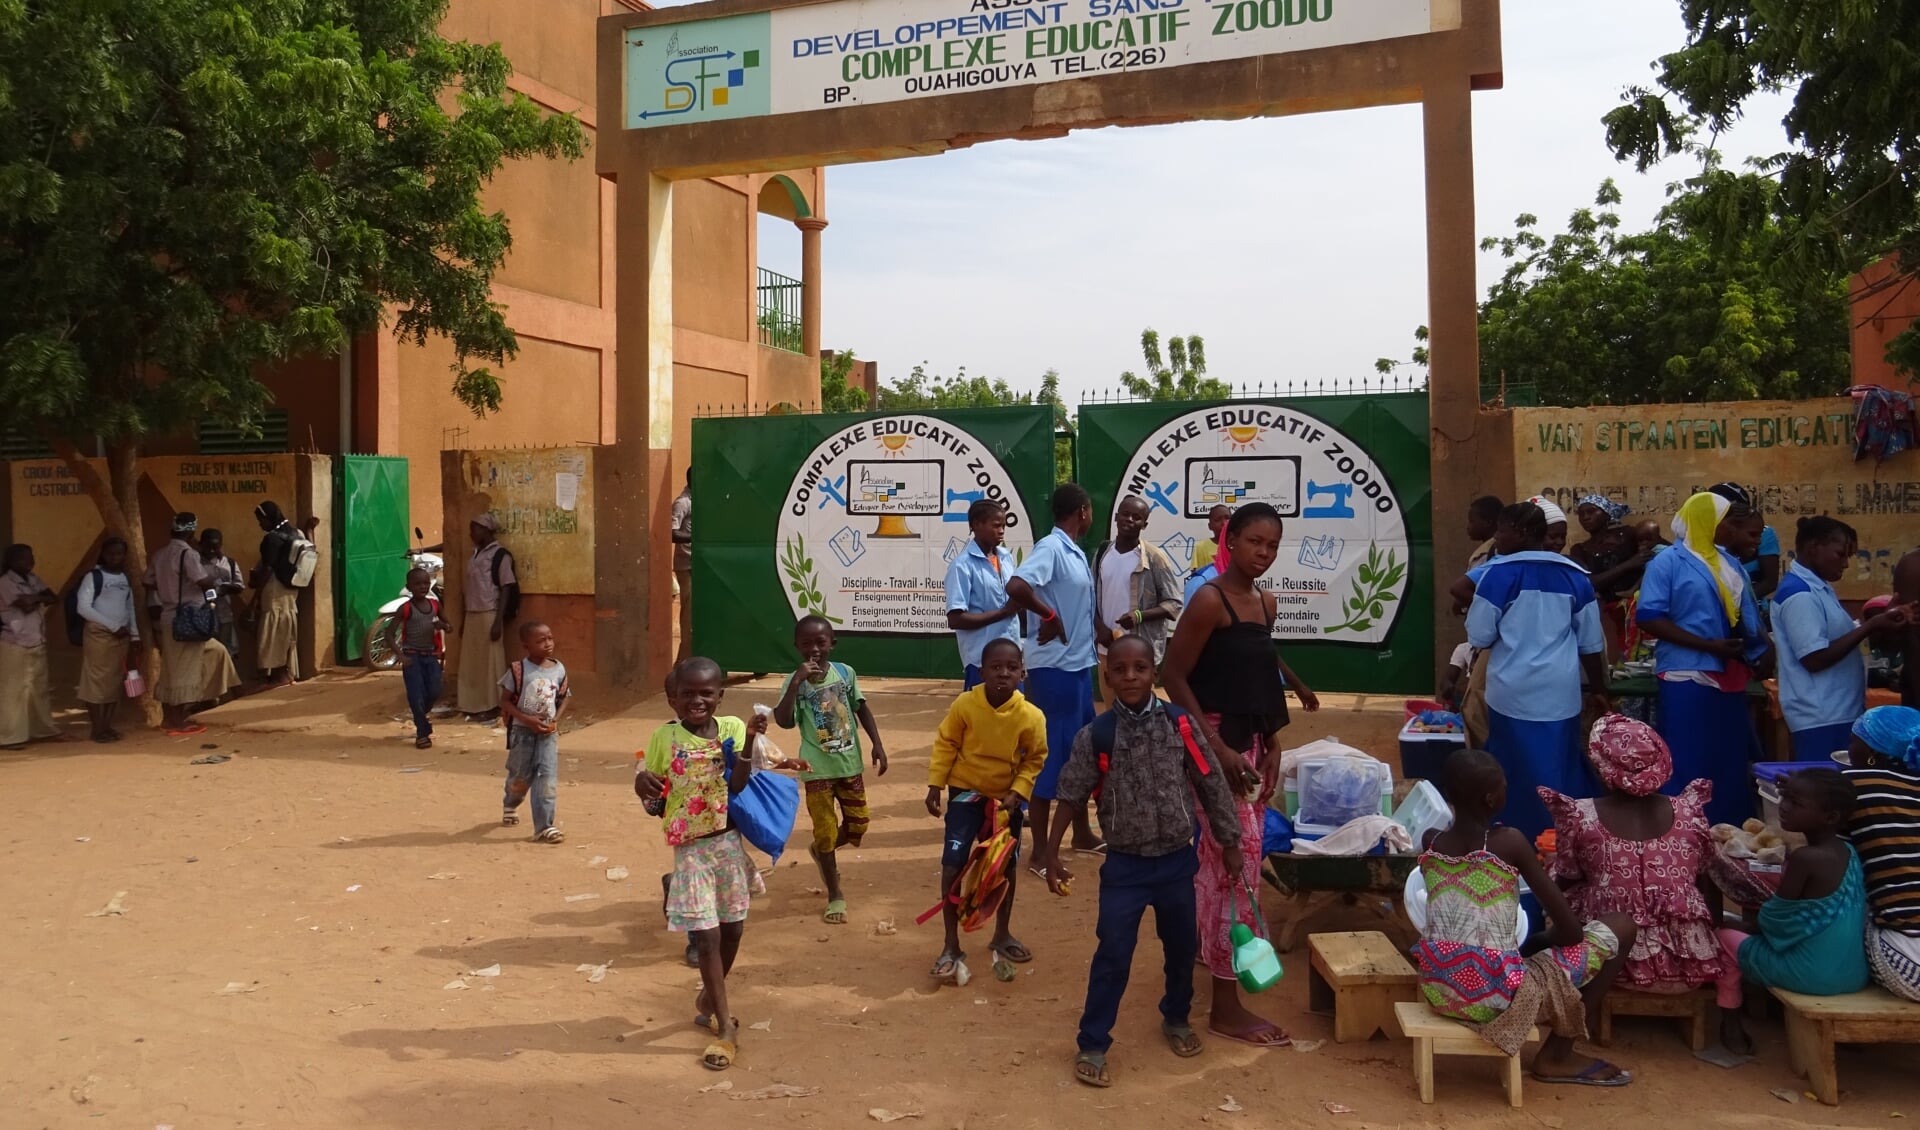 Onderwijscomplex Zoodo in Burkina Fasso is uitgegroeid tot een belangrijk centrum voor beroepsonderwijs.